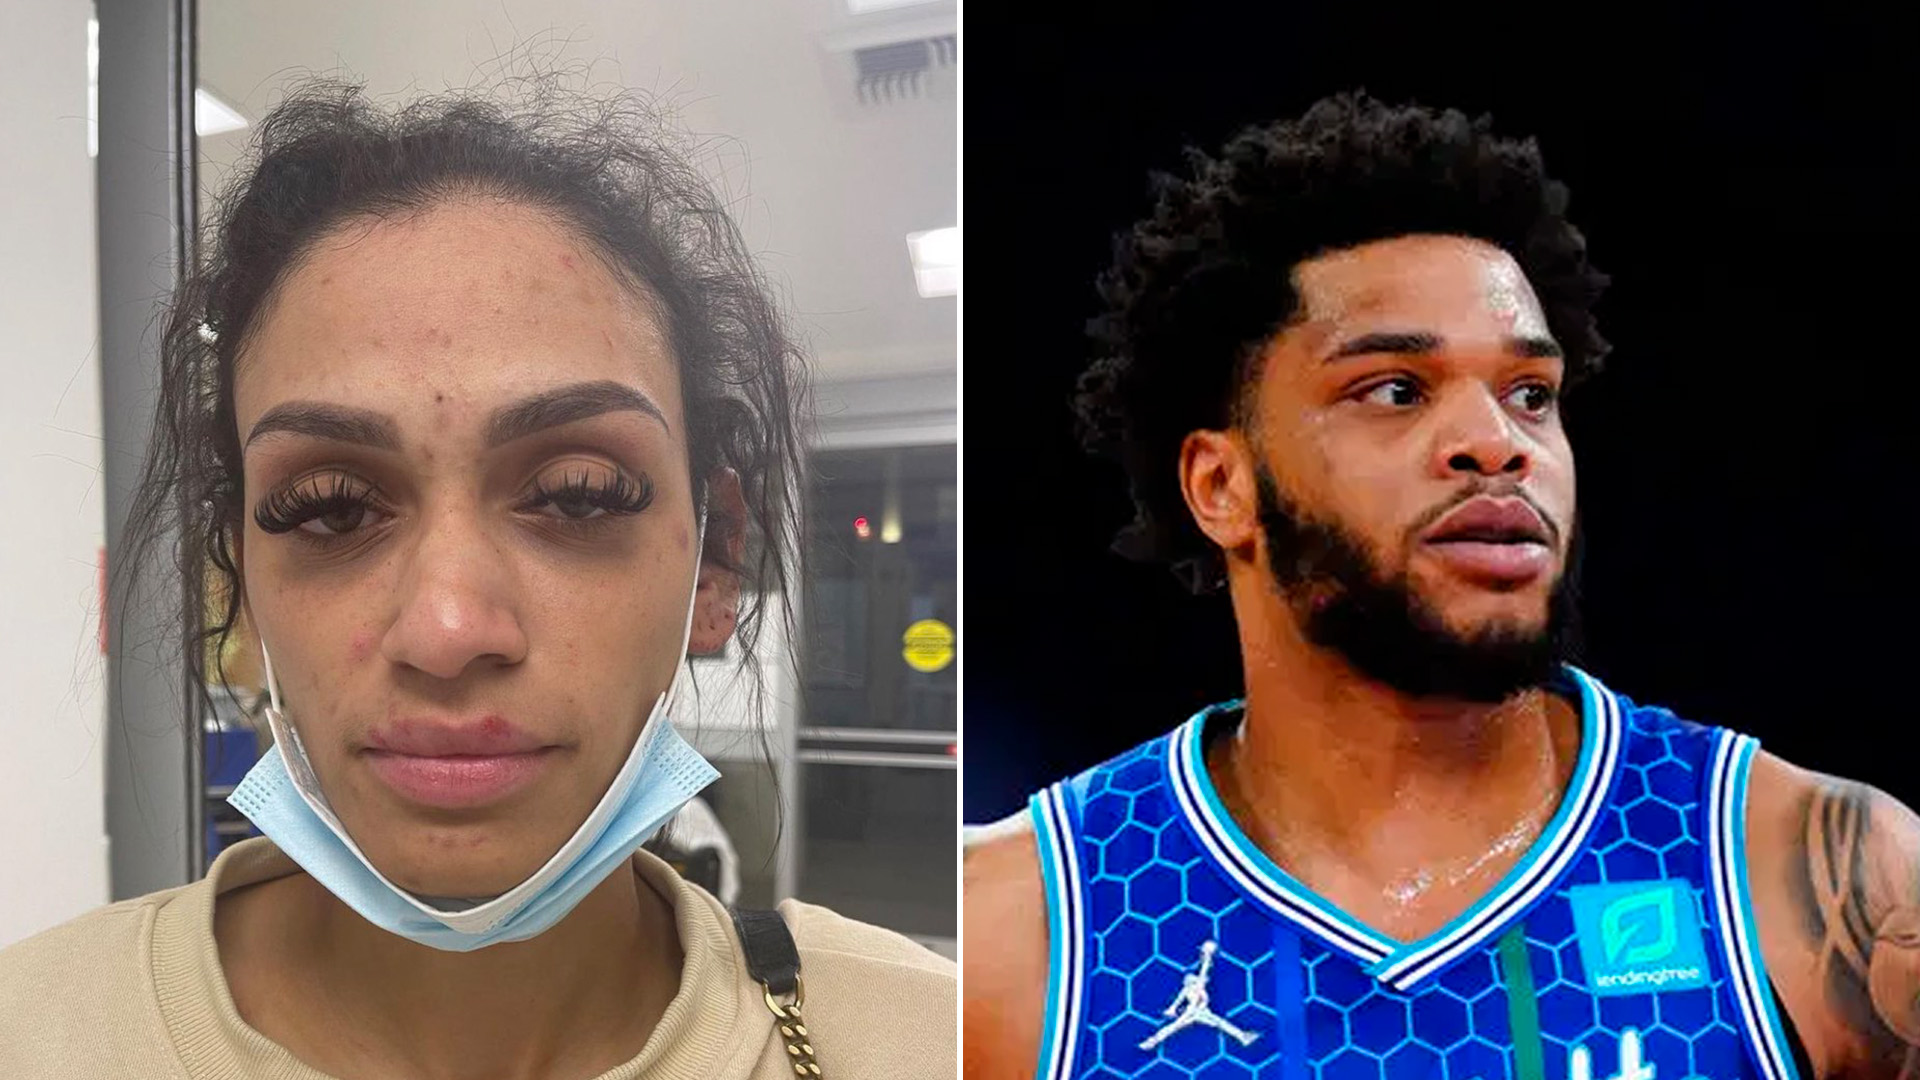 Arrestaron a una figura de la NBA por agredir brutalmente a su esposa